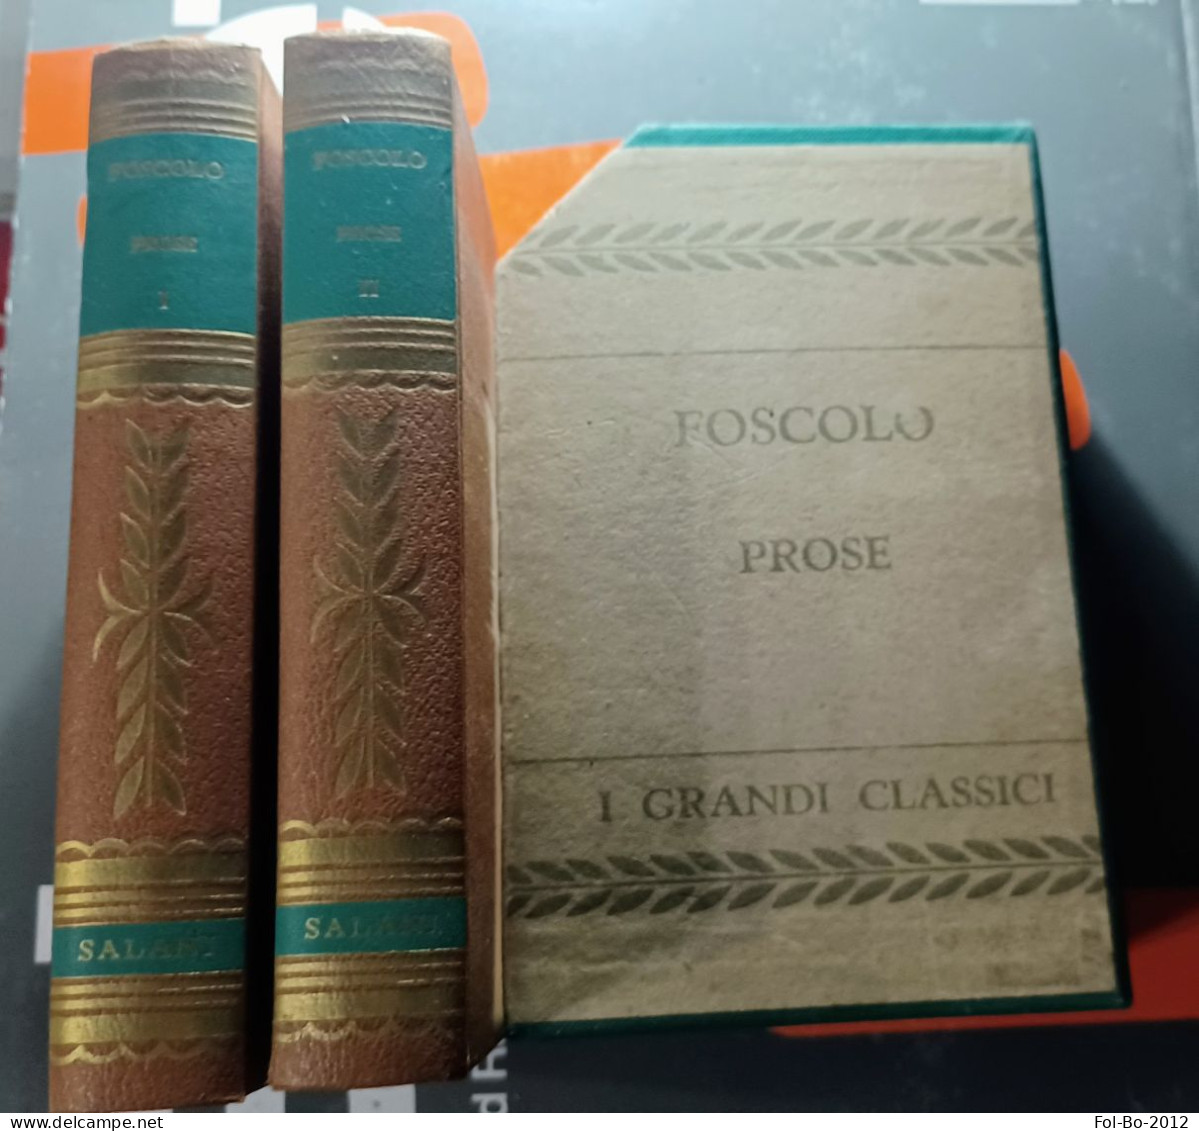 Foscolo Prose Salani Editore Anno ? - Poesía